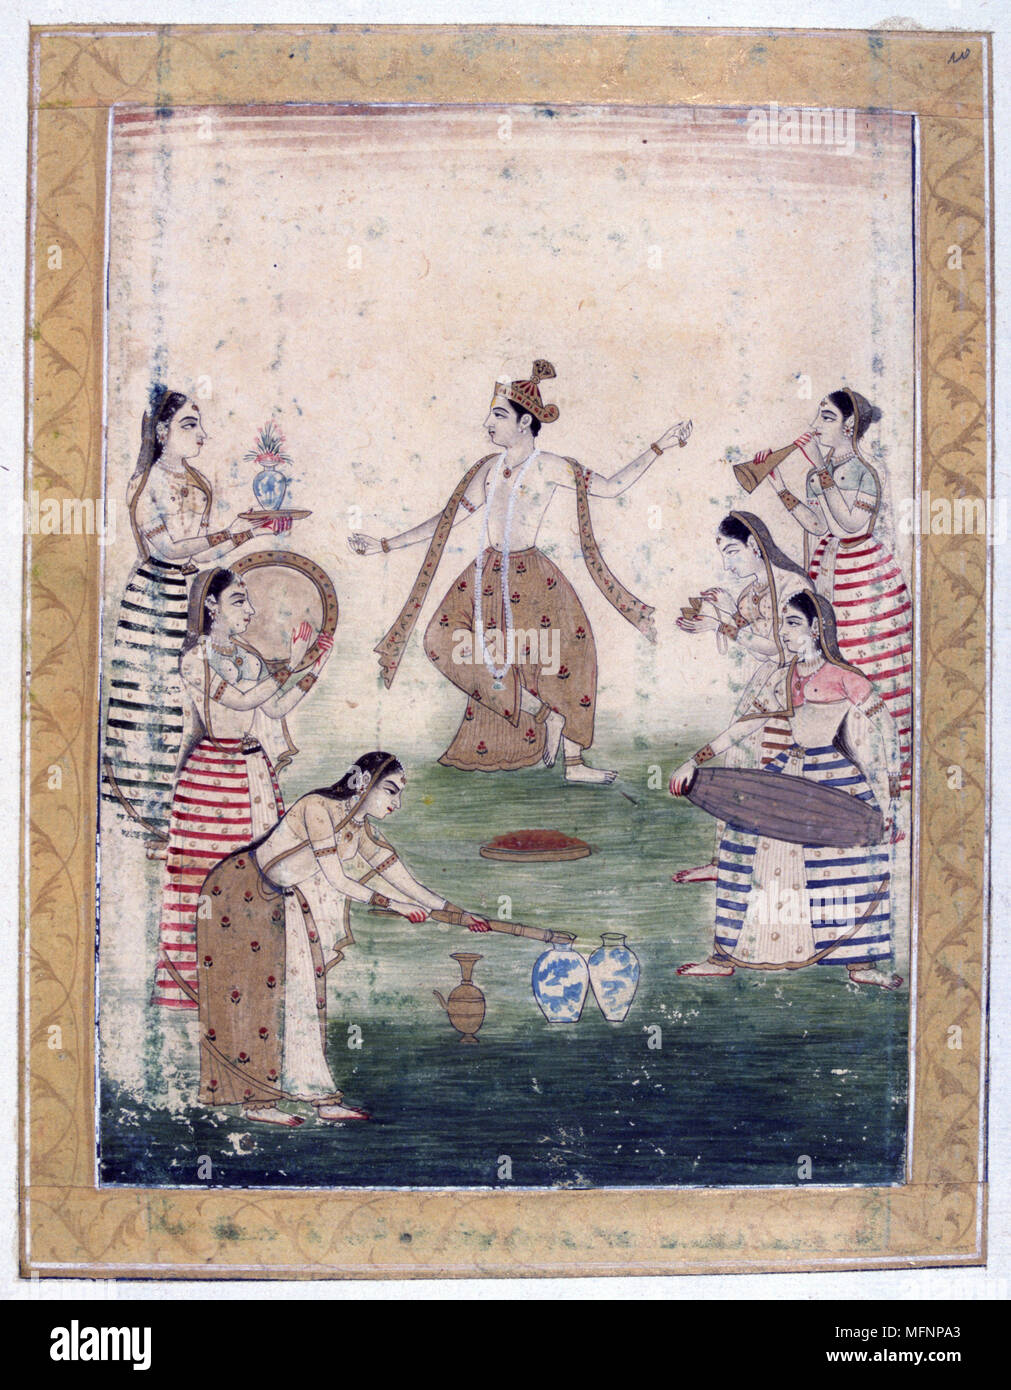 Album von Ragamala. Vasanta (Frühling): Krishna Tänze zu spielen der Gopis, Kuh - Herding, junge Frauen zu Krishna gewidmet. 19. jahrhundert Indische Miniatur, Rajasthan Schule mit Mughul beeinflussen. Stockfoto